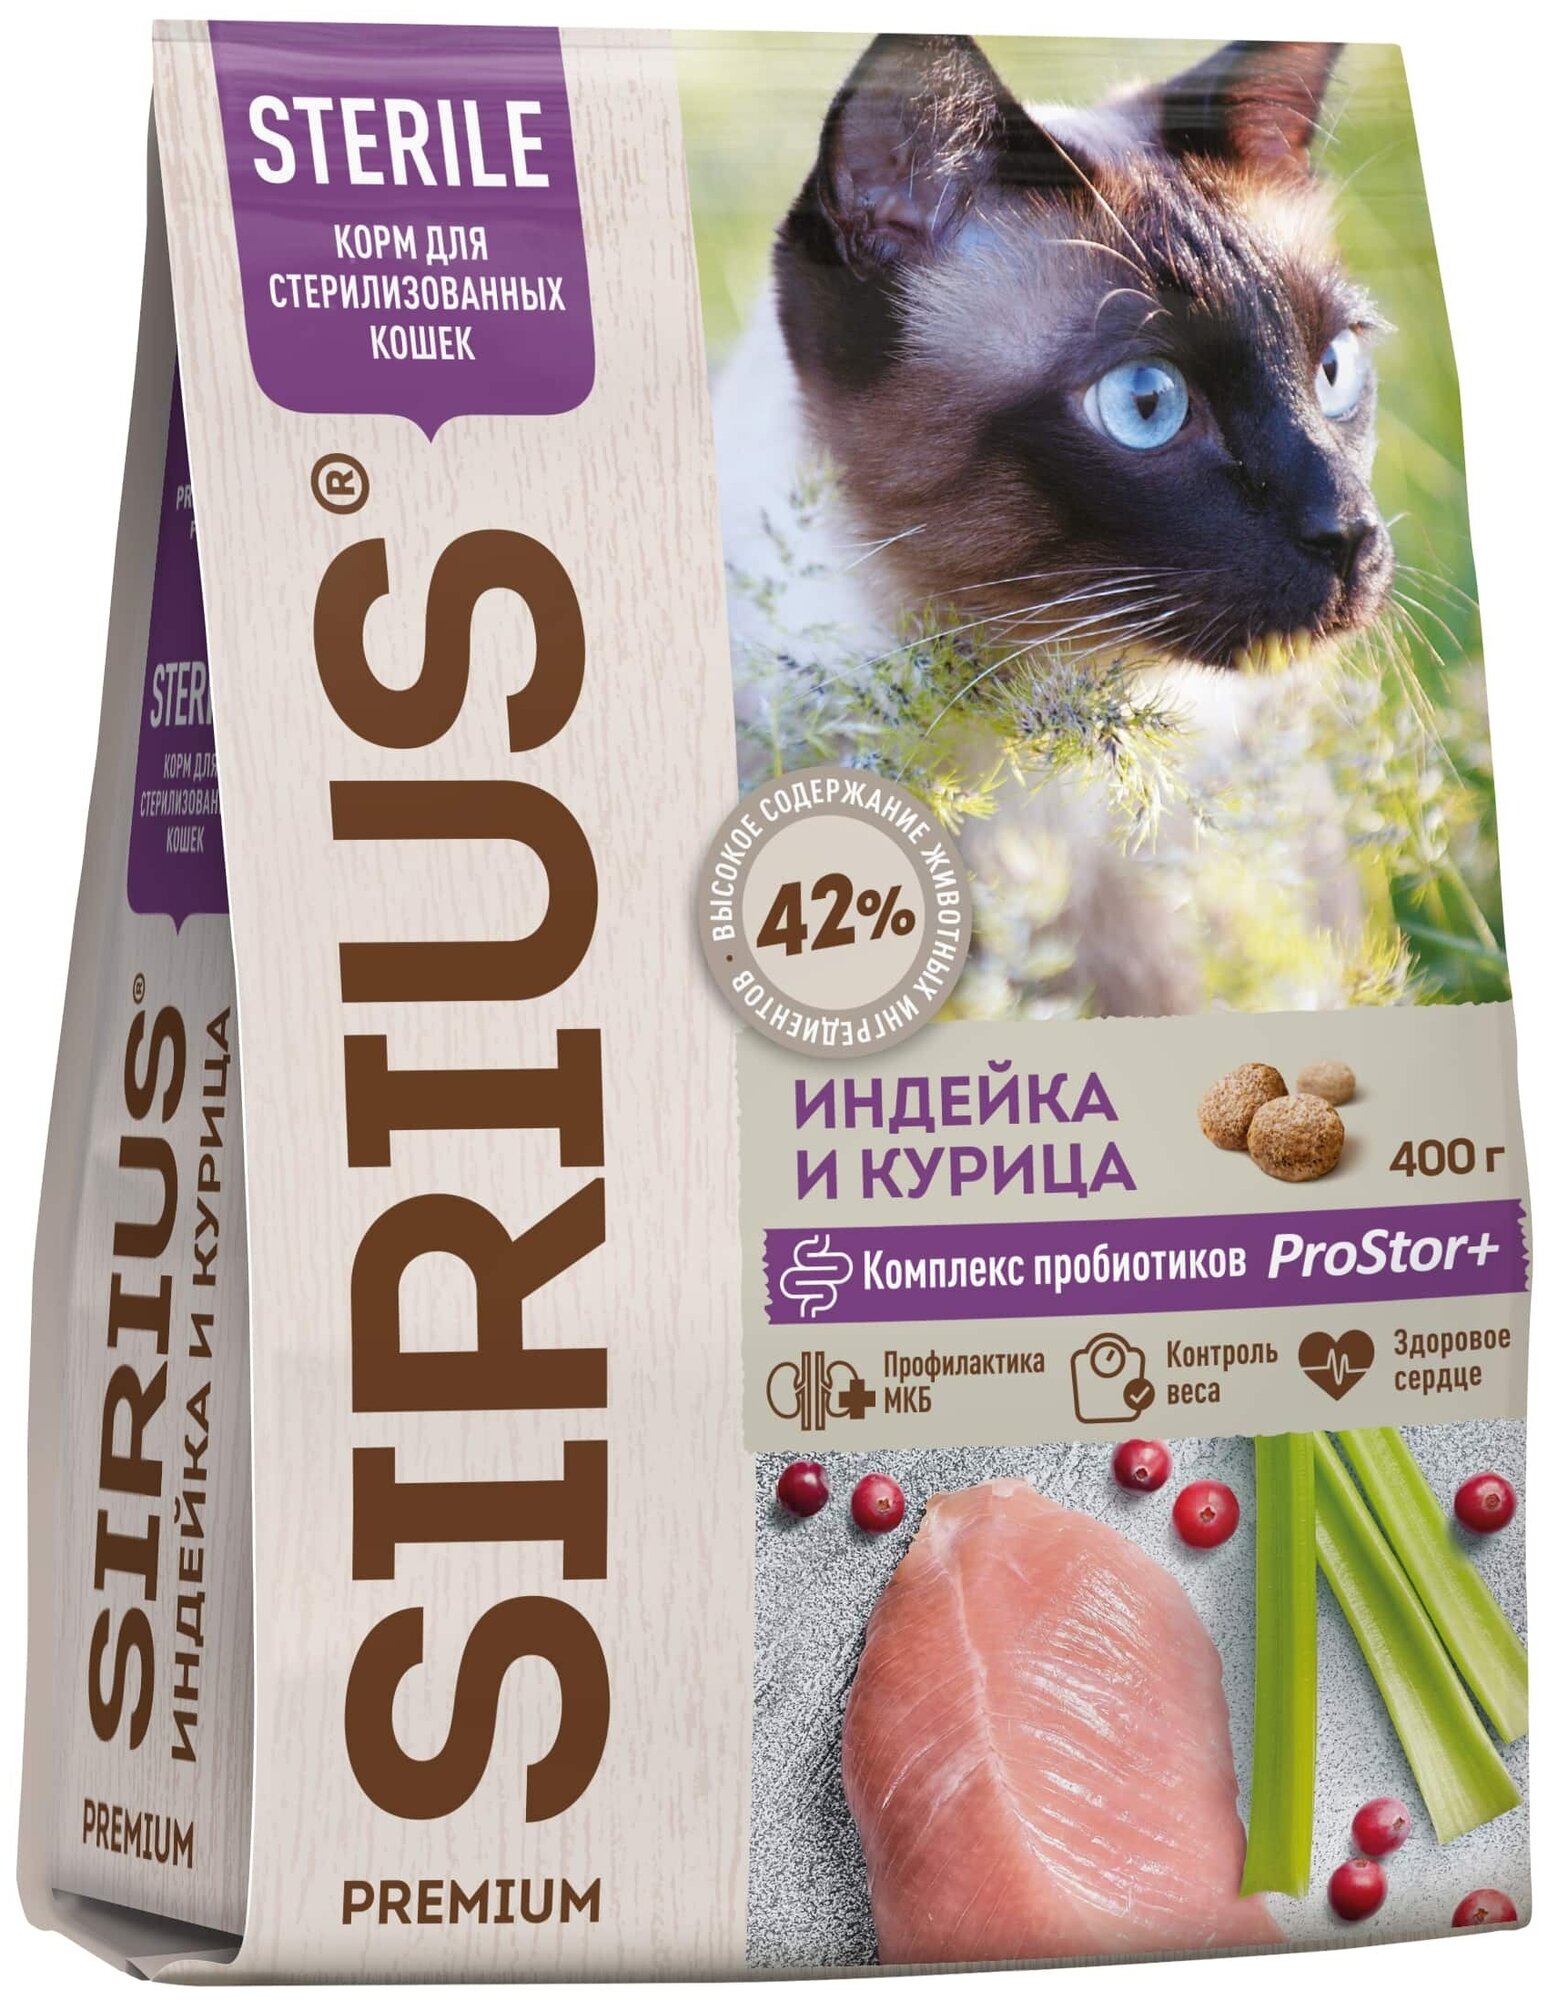 SIRIUS (Сириус) сухой полнорационный корм премиум класса для стерилизованных кошек индейка И курица 400 гр - фотография № 1